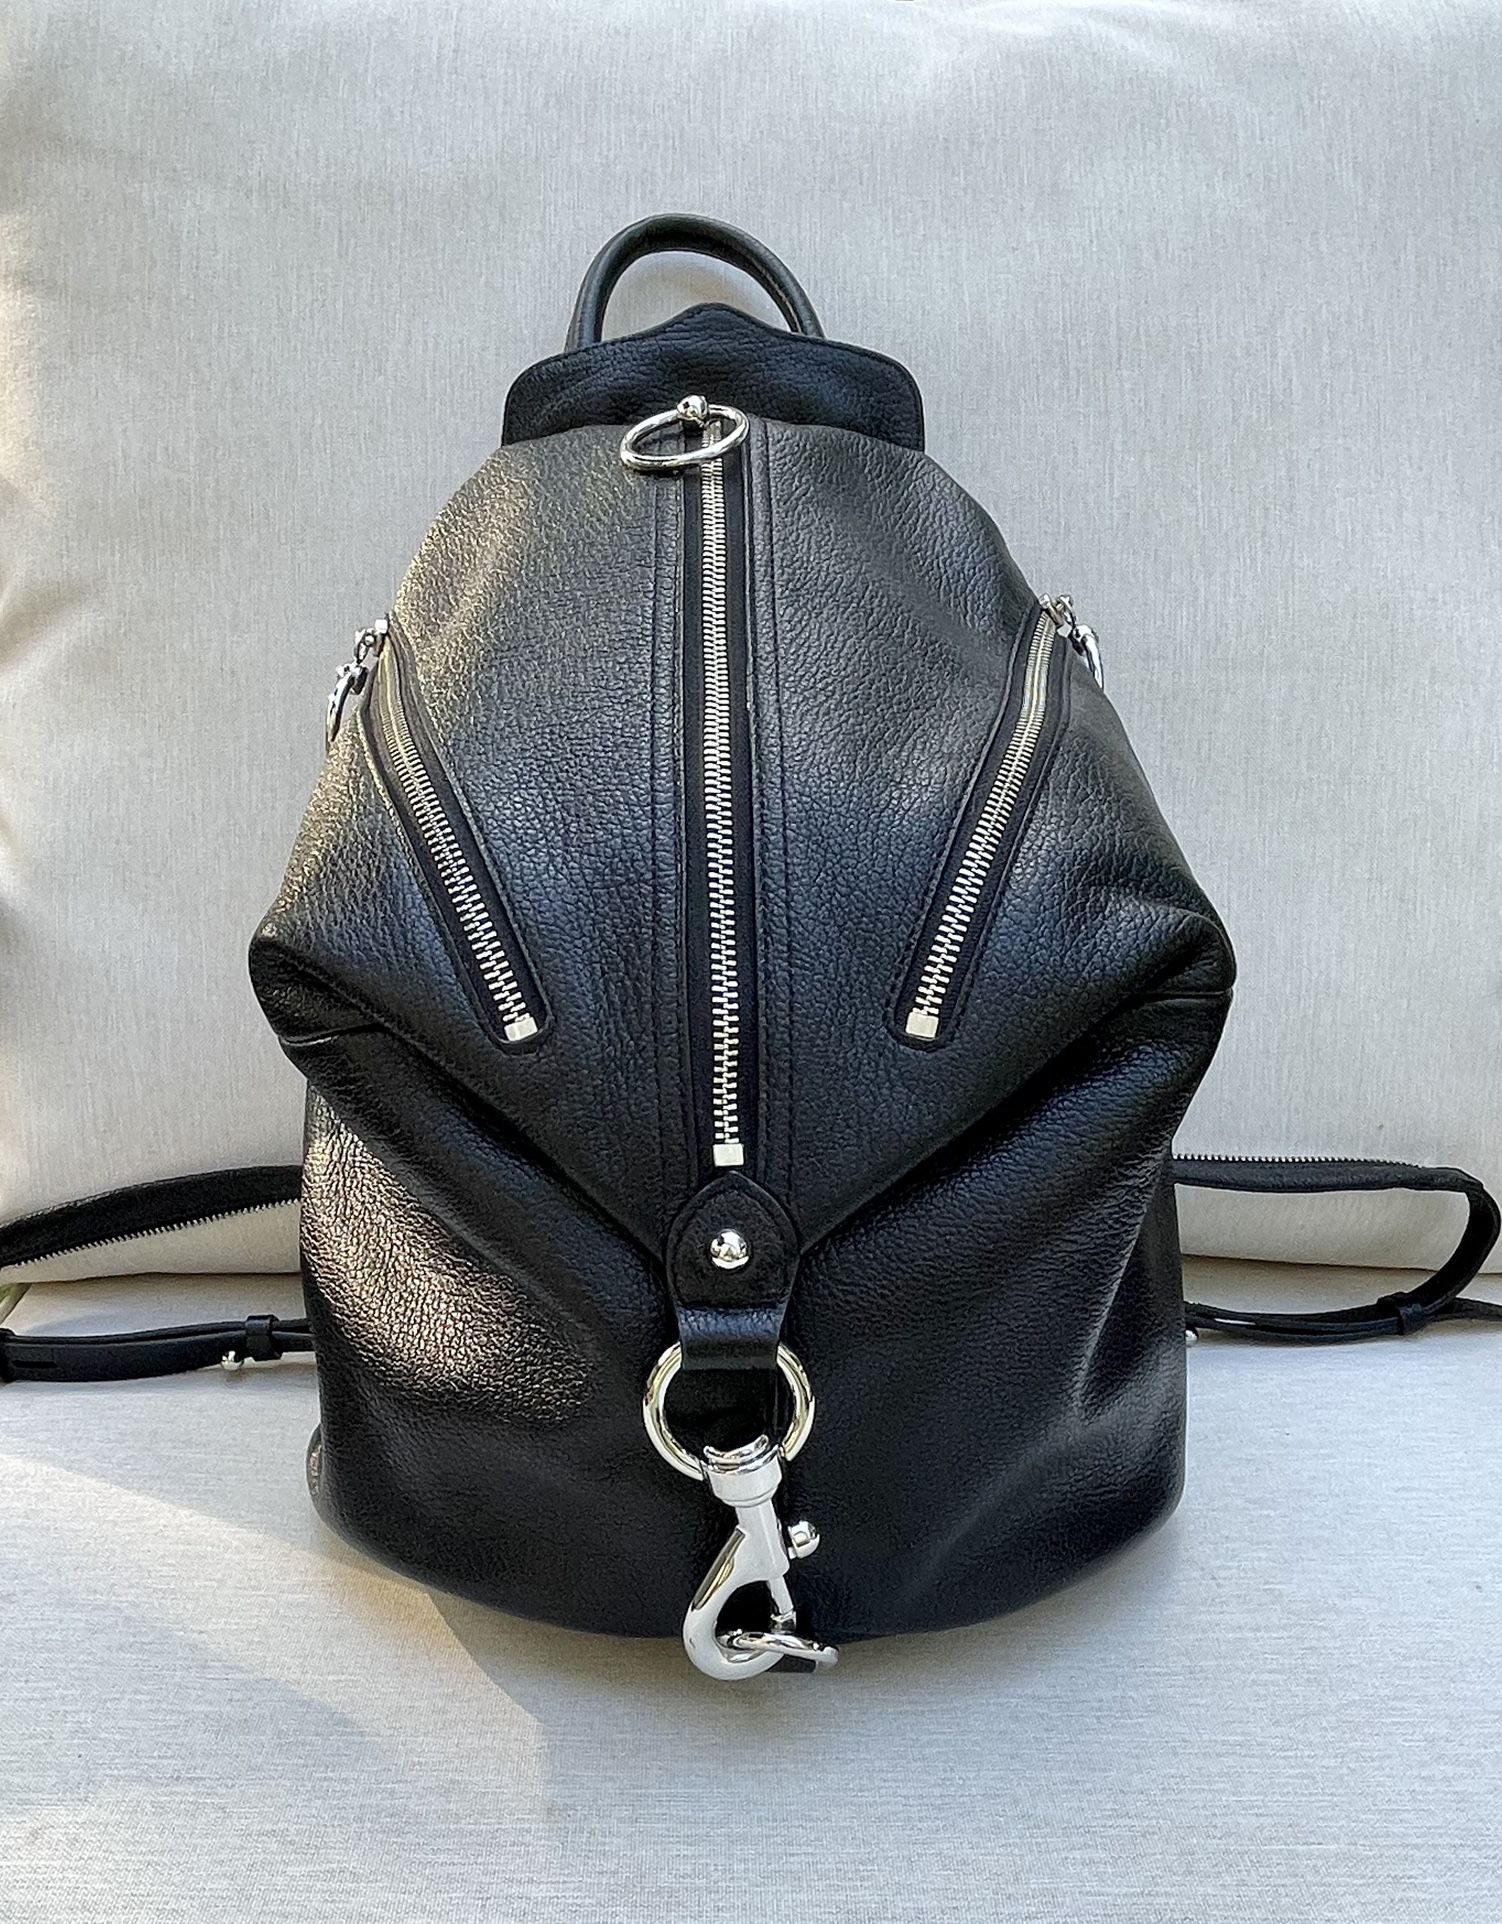 Rebecca Minkoff Designer Leather Backpack/Handbag/Purse